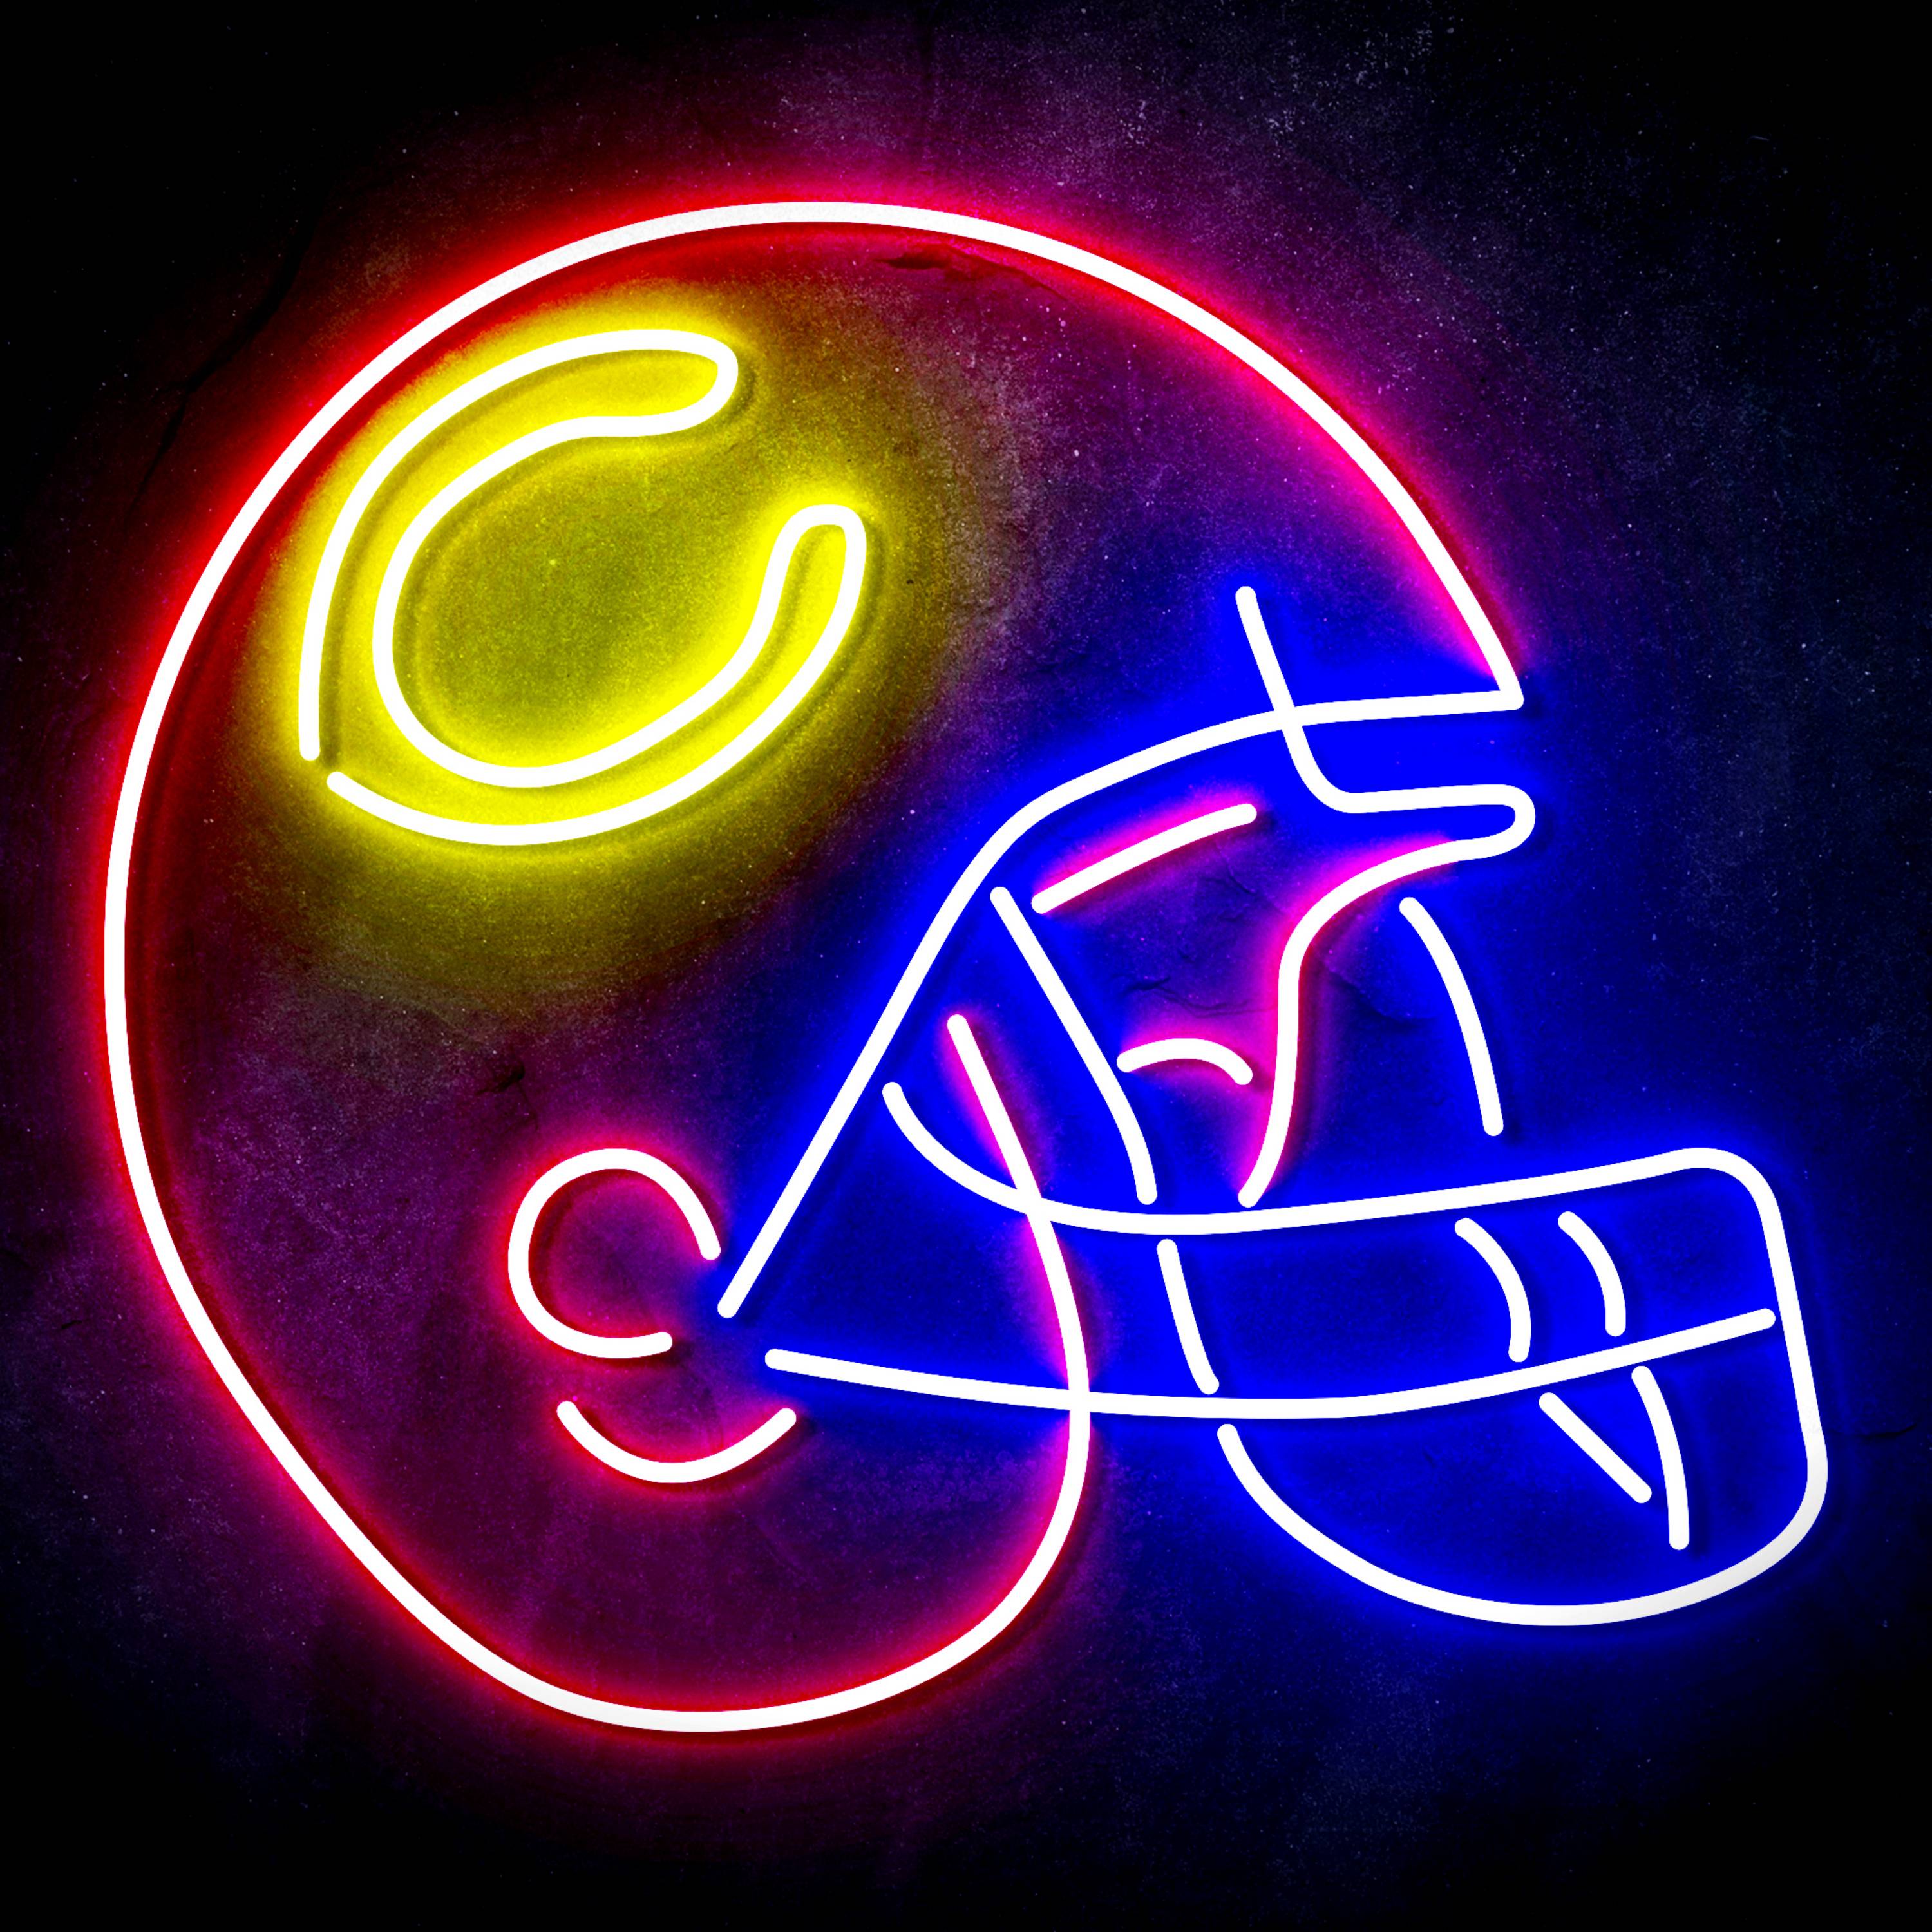 NFL Chicago Bears Helmet LED Neon Sign